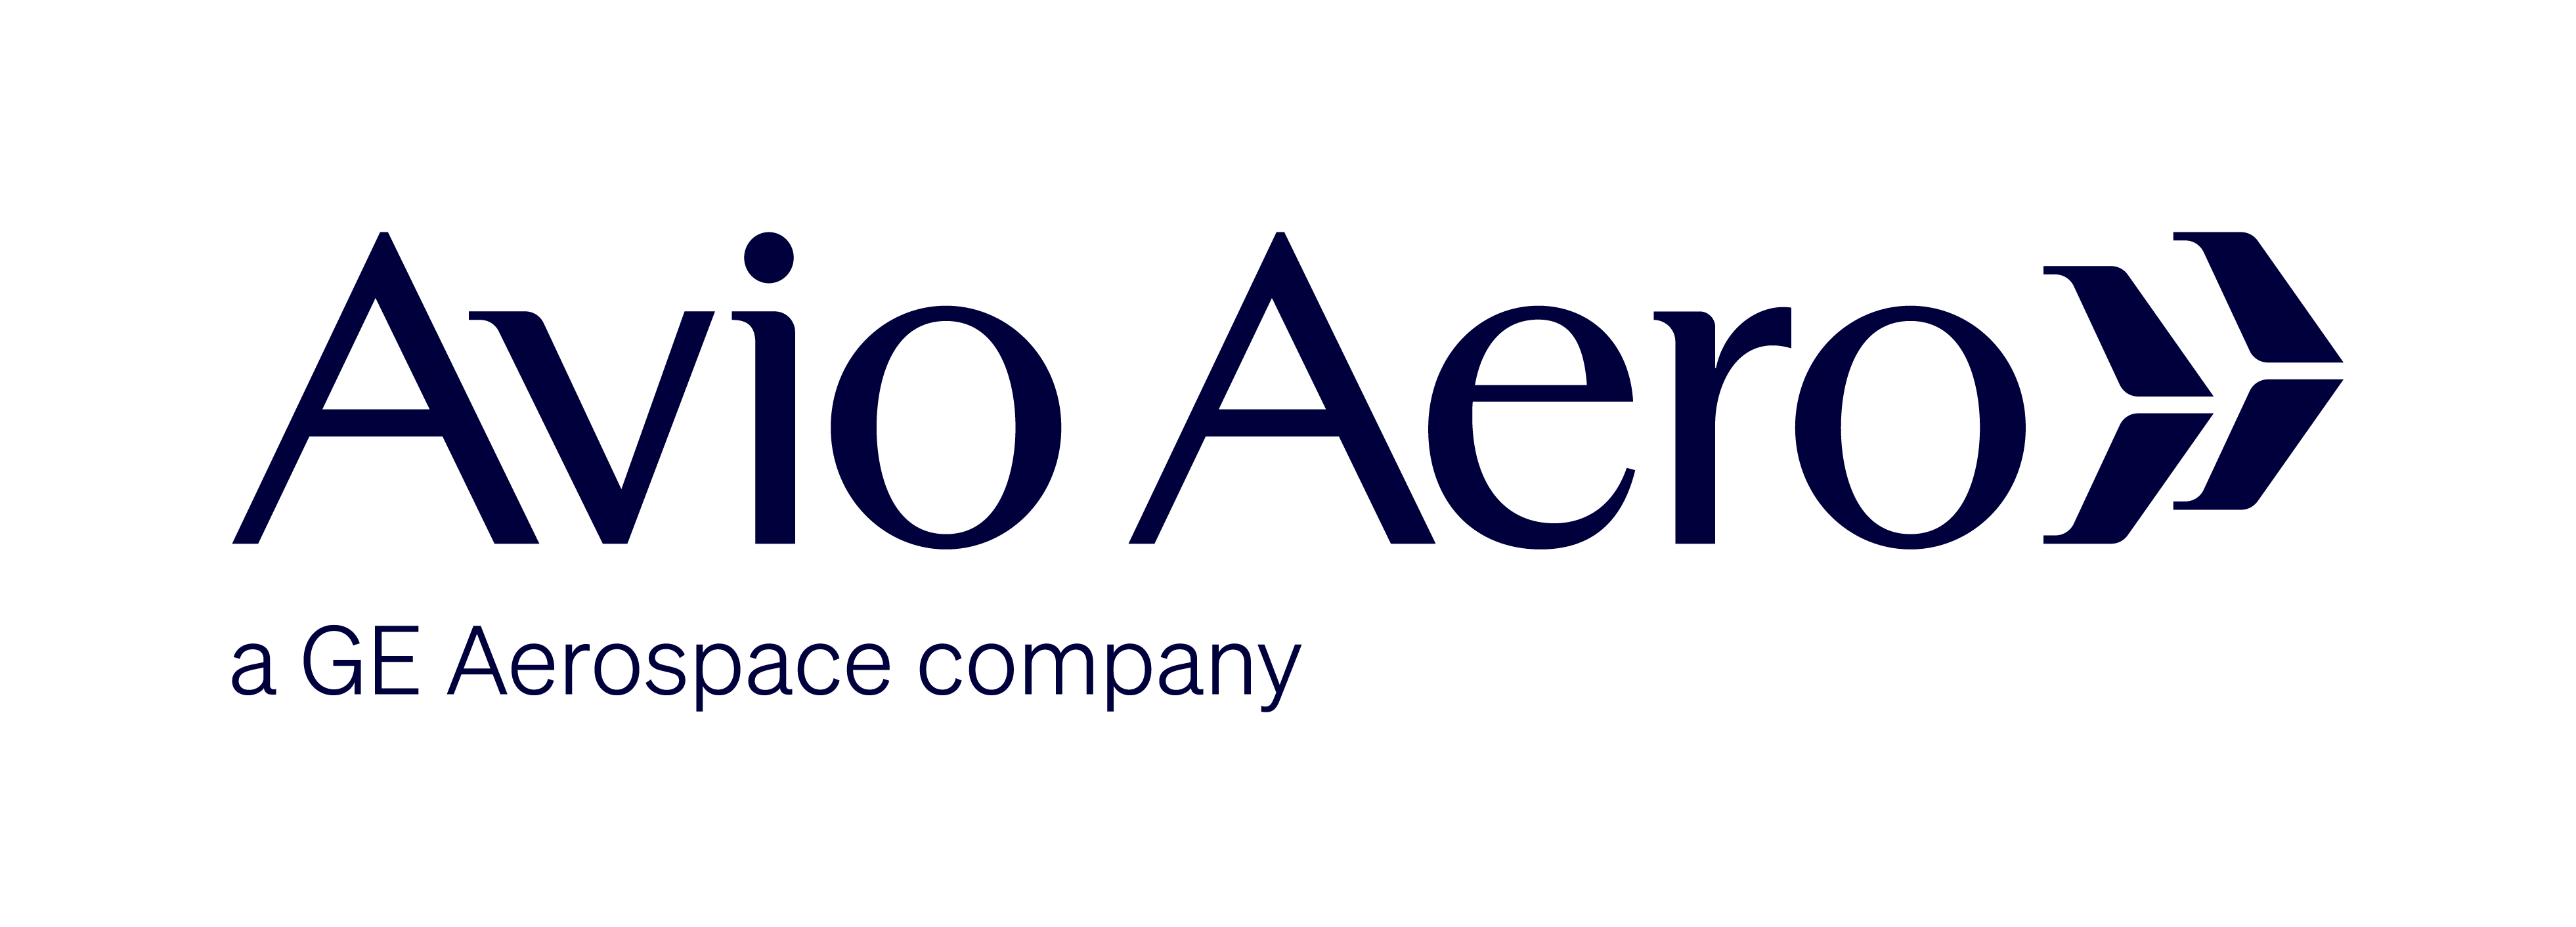 AVIO AERO-A AEROSPACE COMPANY